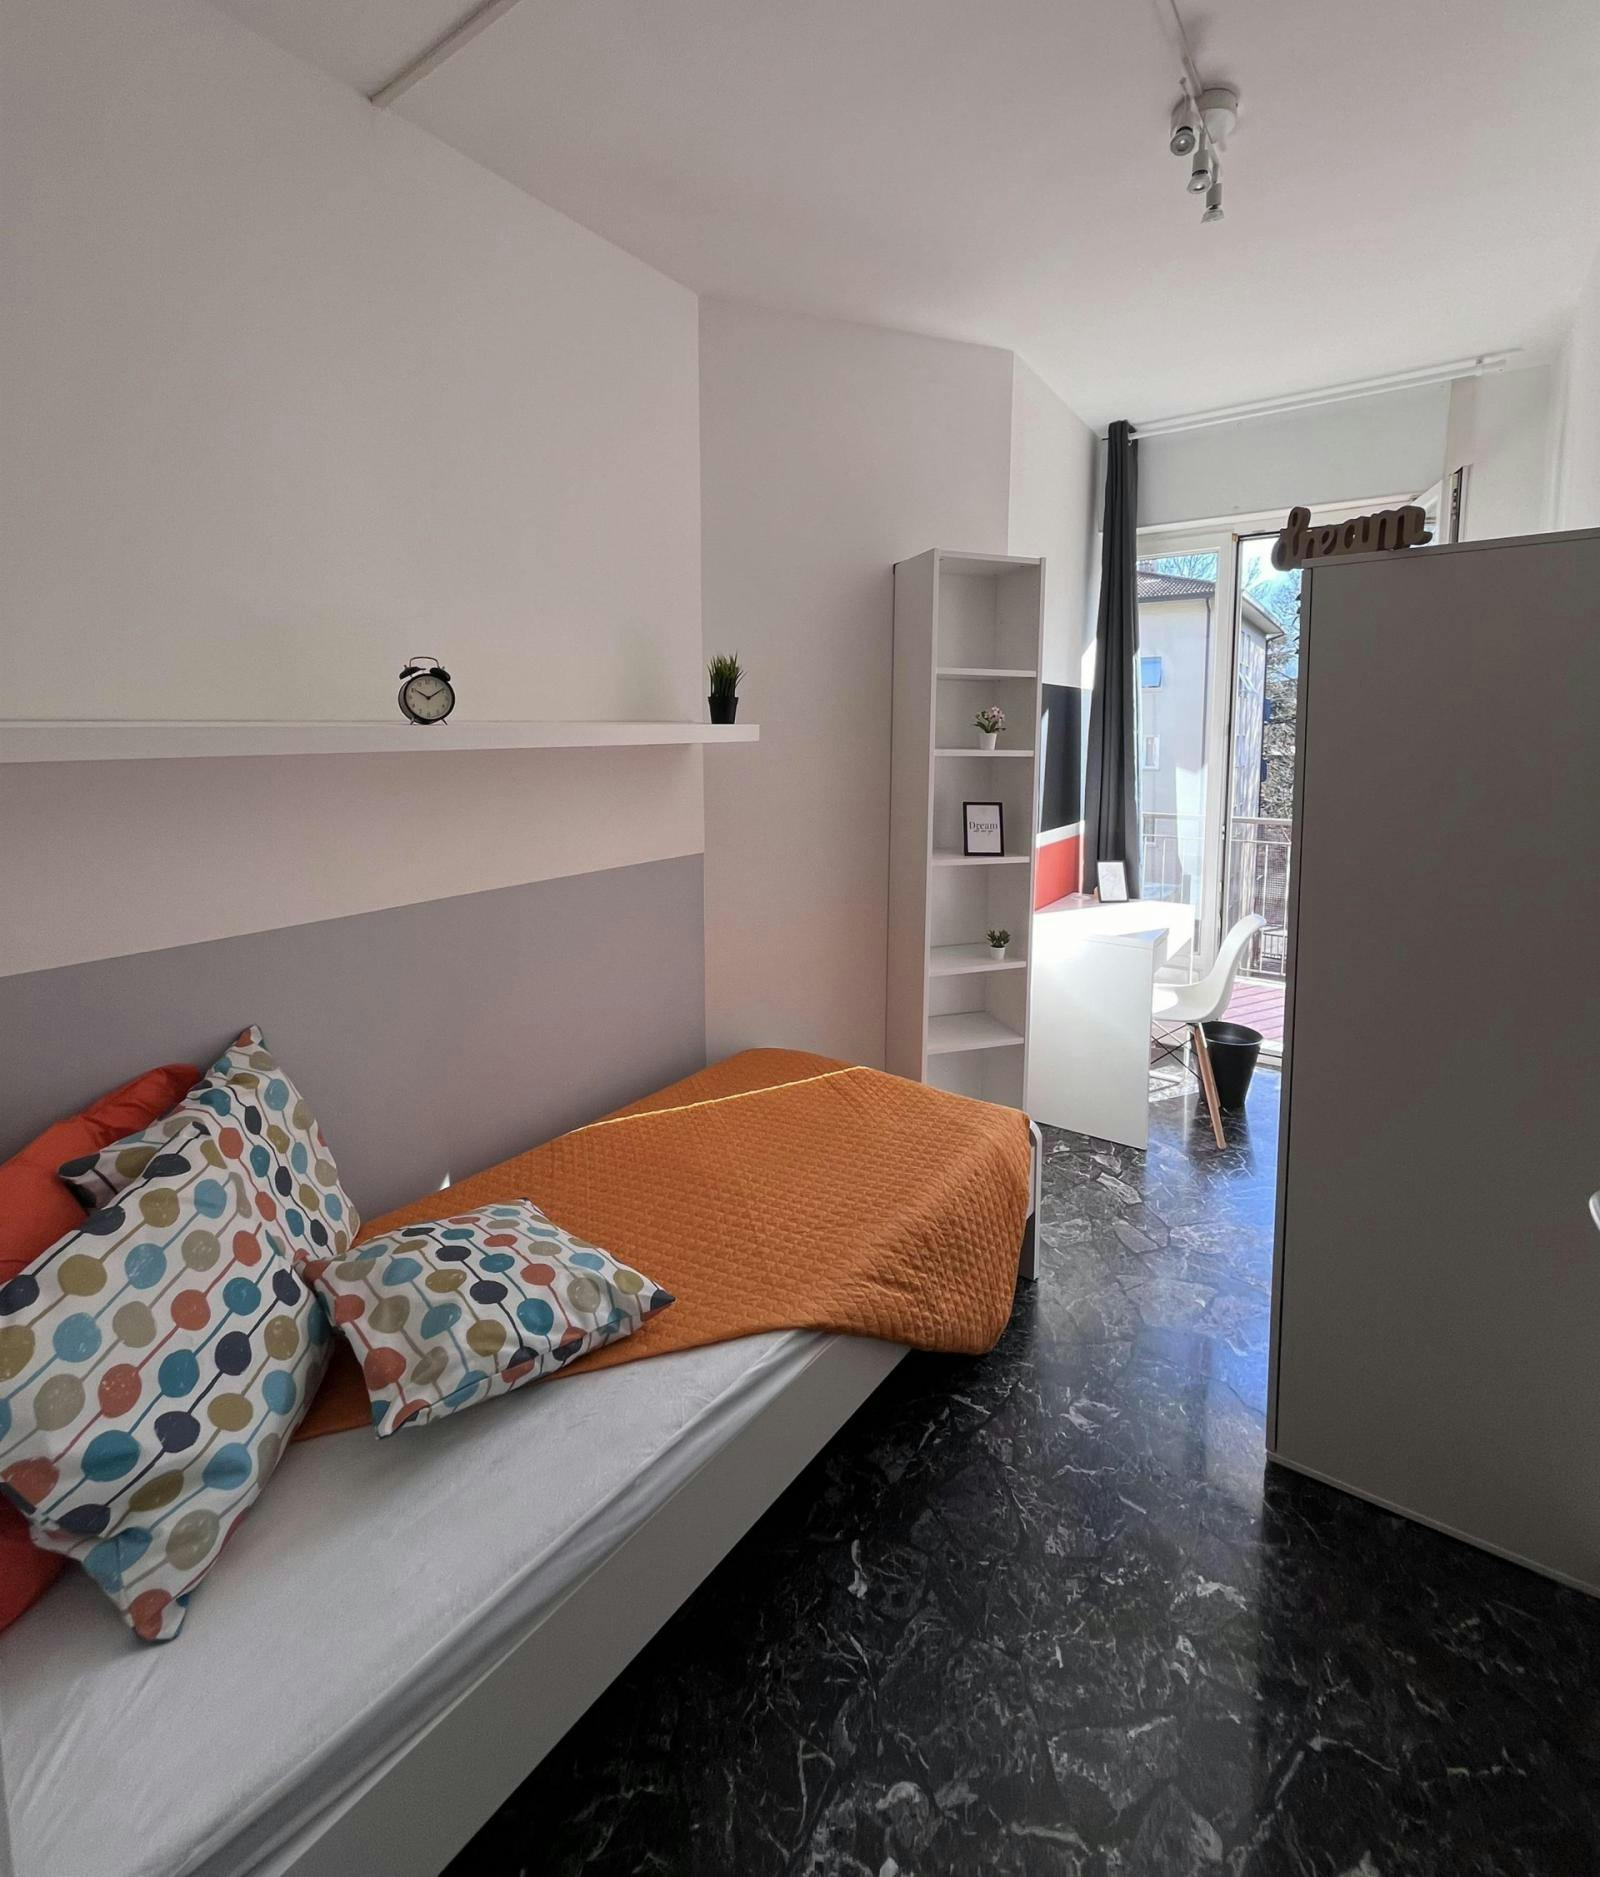 Airy single bedroom with a balcony, near the Santa Chiara train station